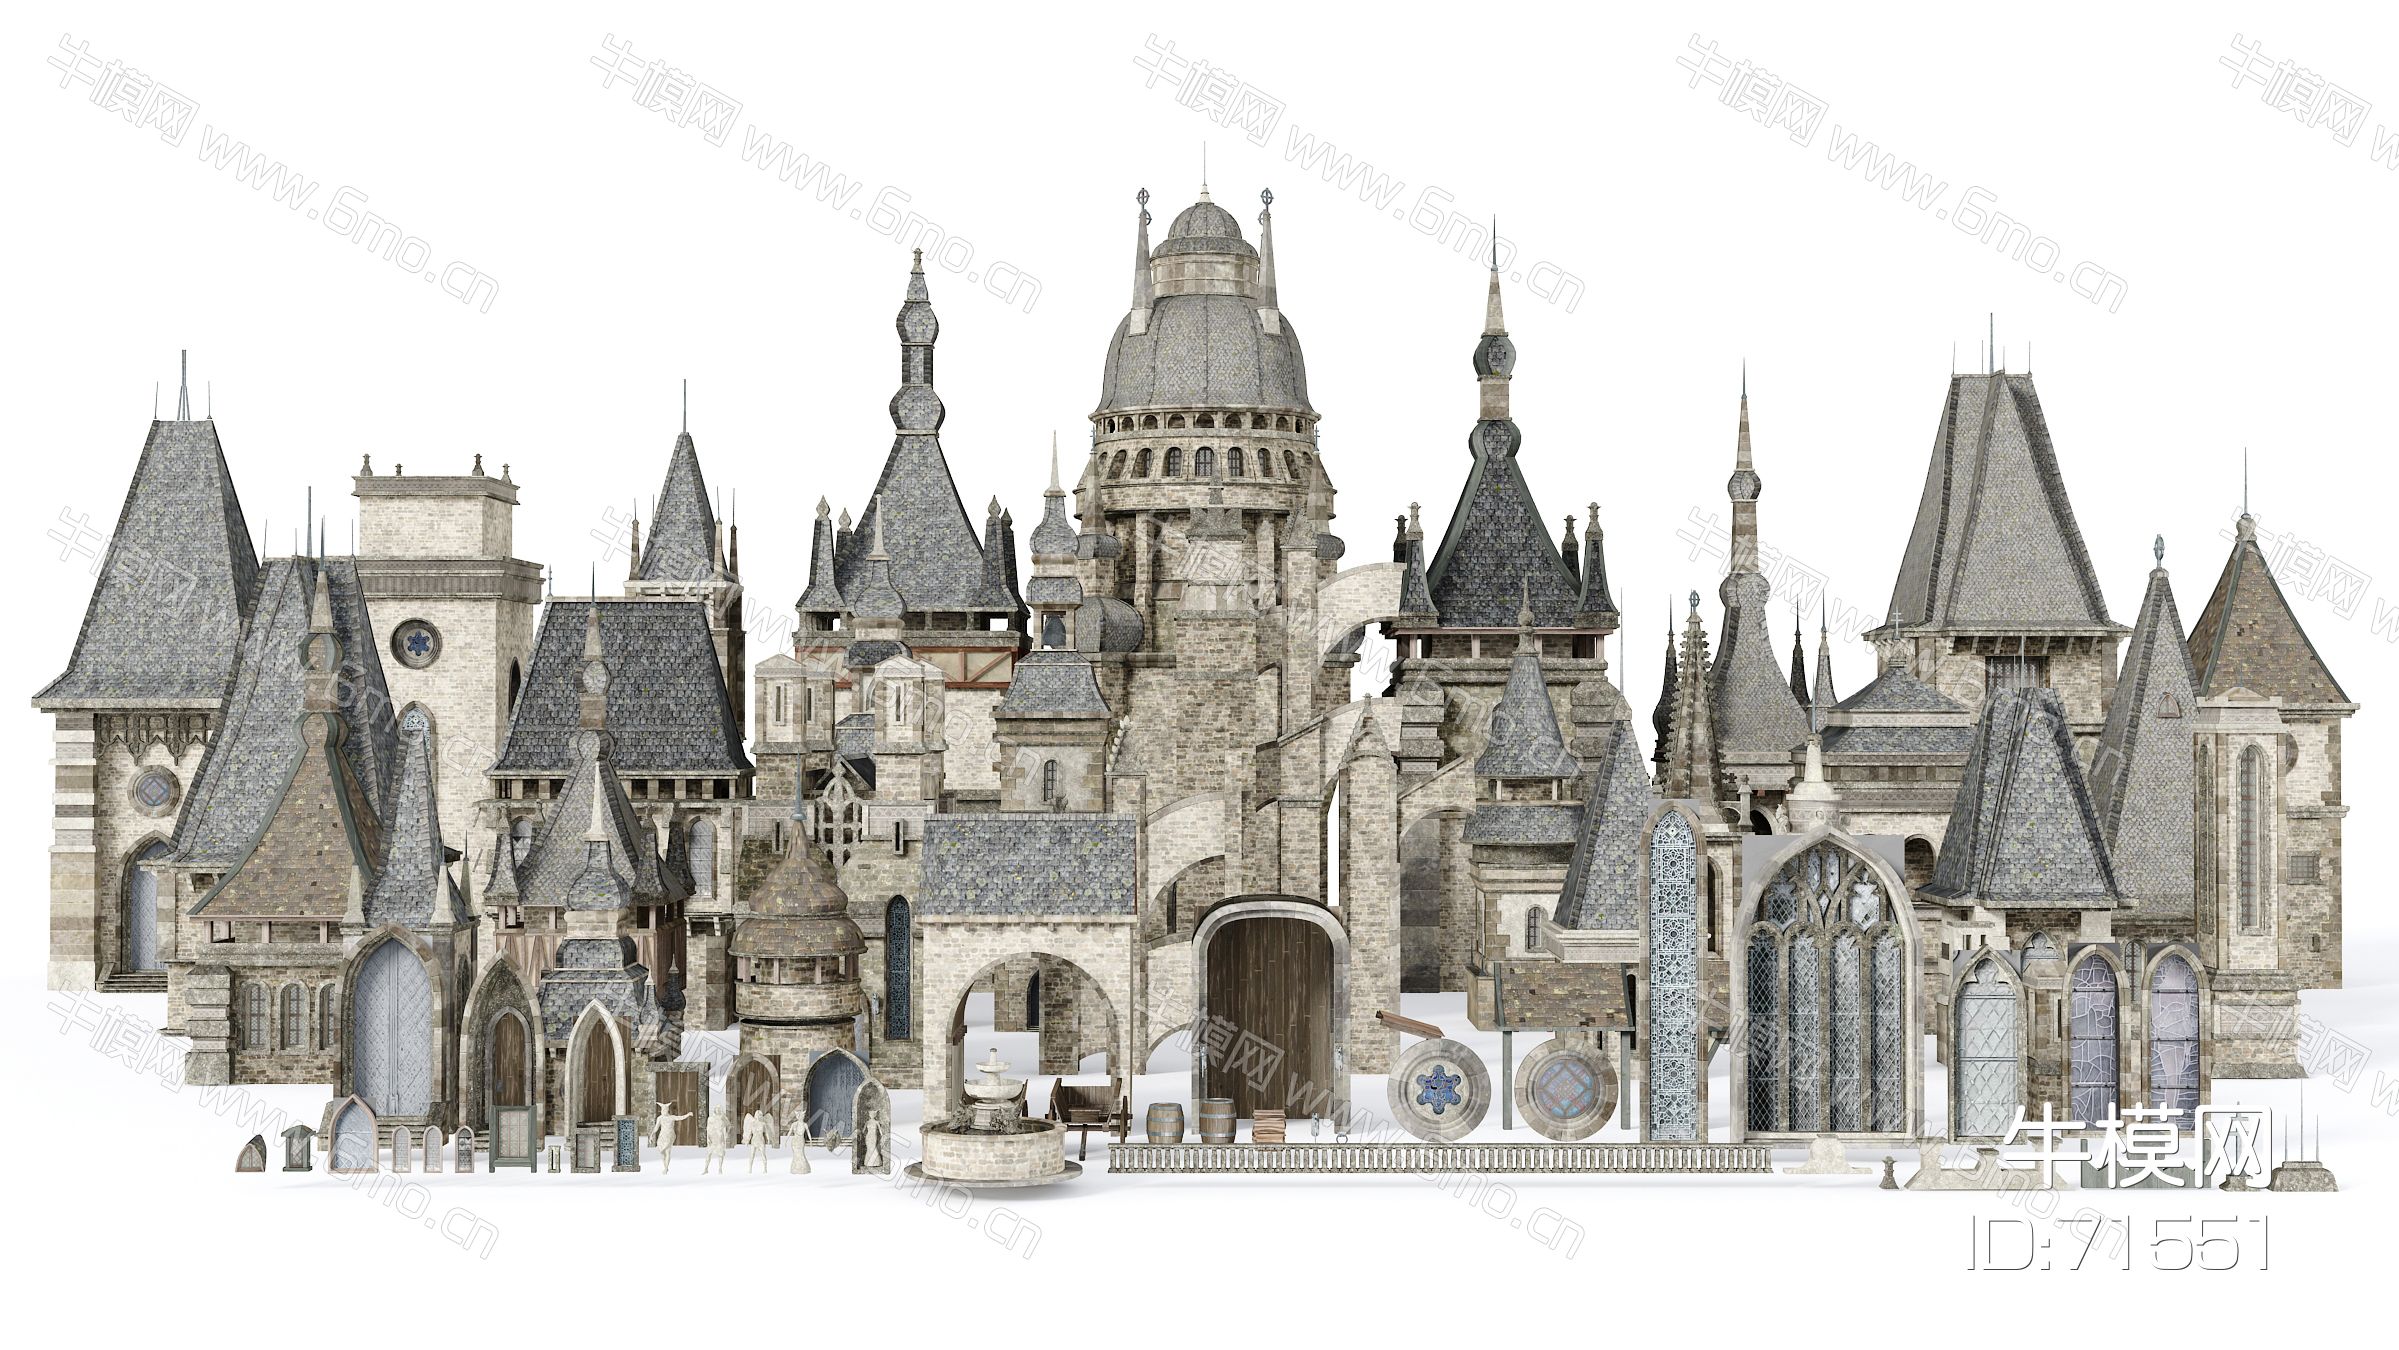 欧式古建筑配件，古城堡配件，欧式塔楼，古塔楼，中世纪古建筑，欧式城堡，欧式古建筑小品